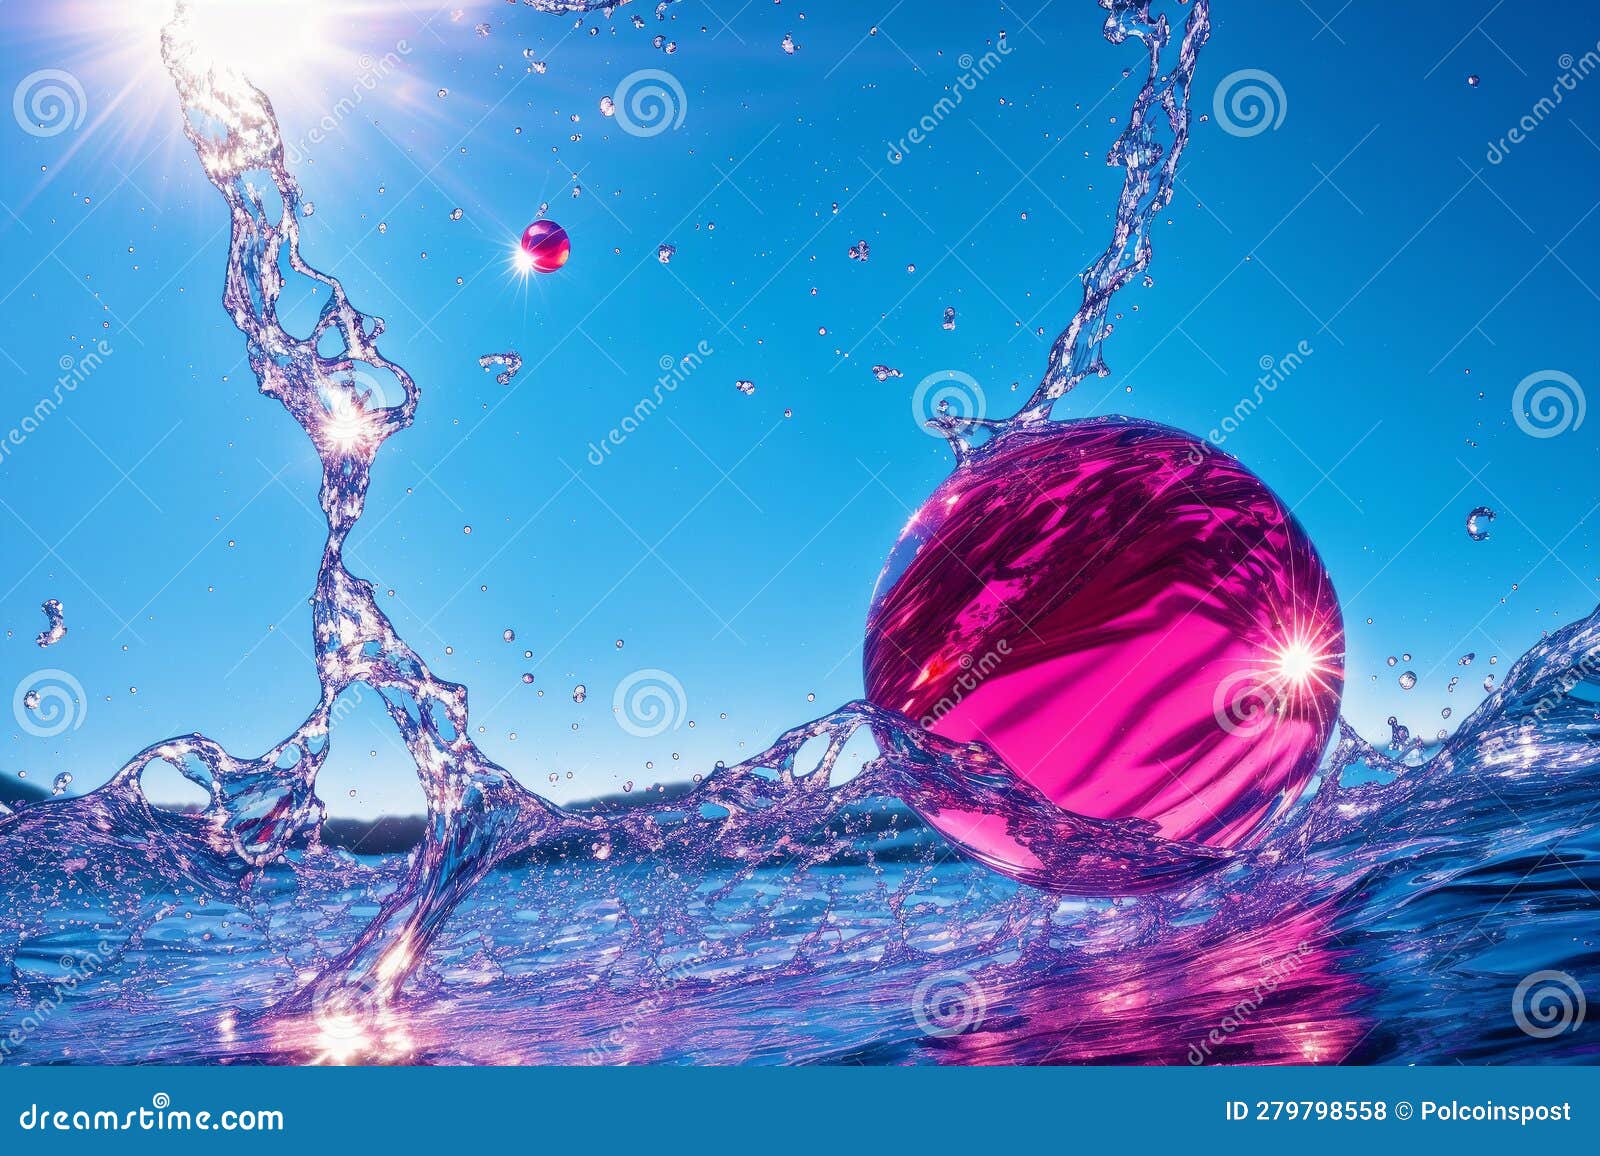 Beautiful Water Splashes. Chromatic Rhapsody. Vibrant Water Splashes ...